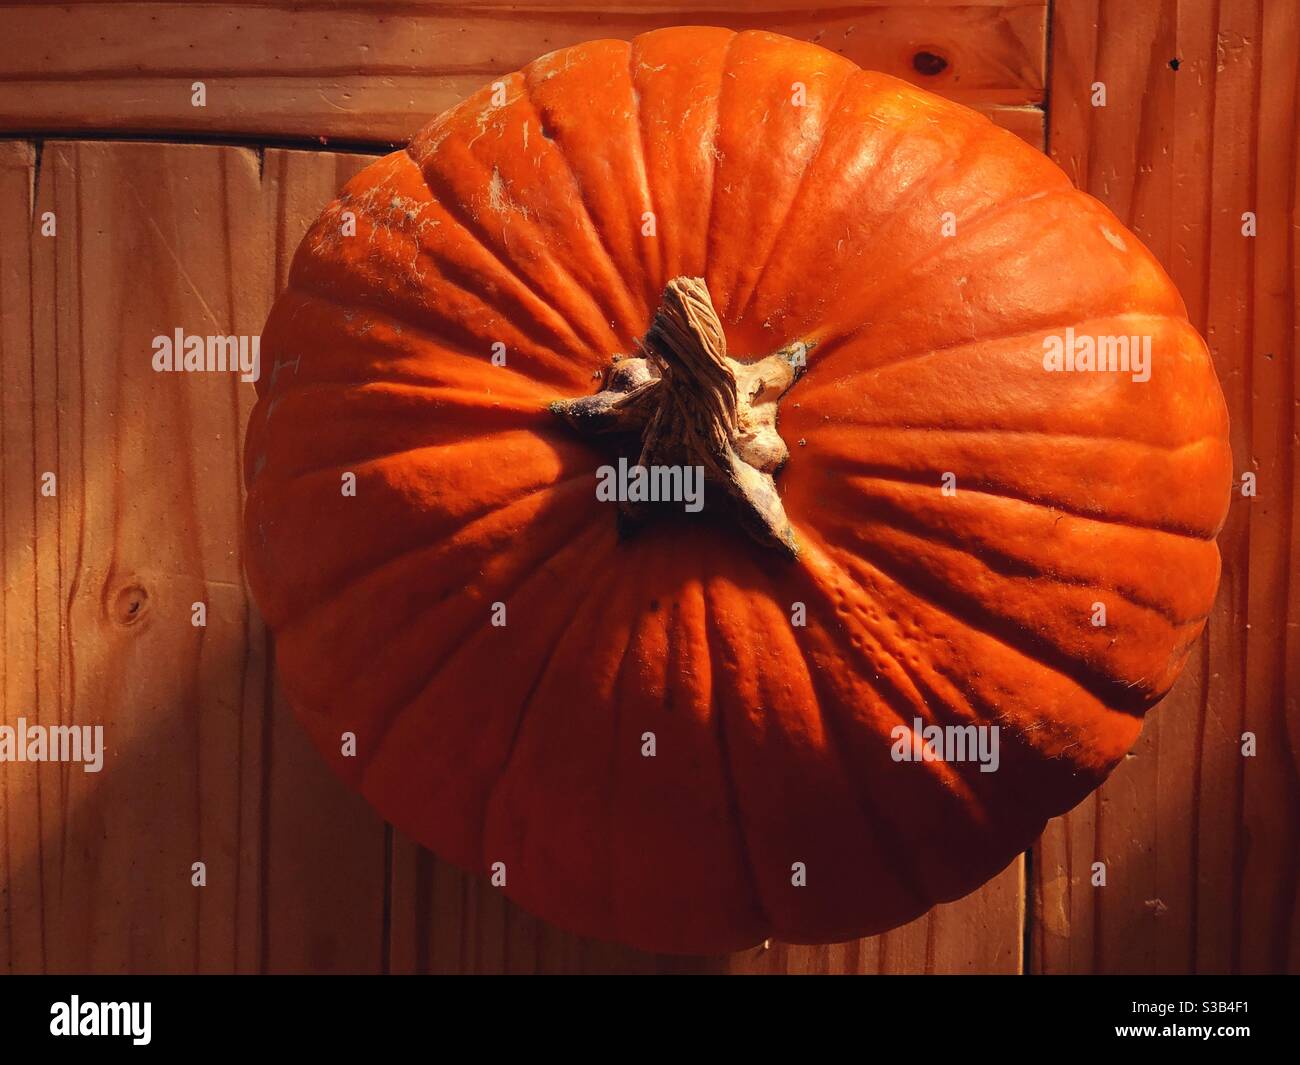 Pumpkin on wooden table in sunlight Stock Photo